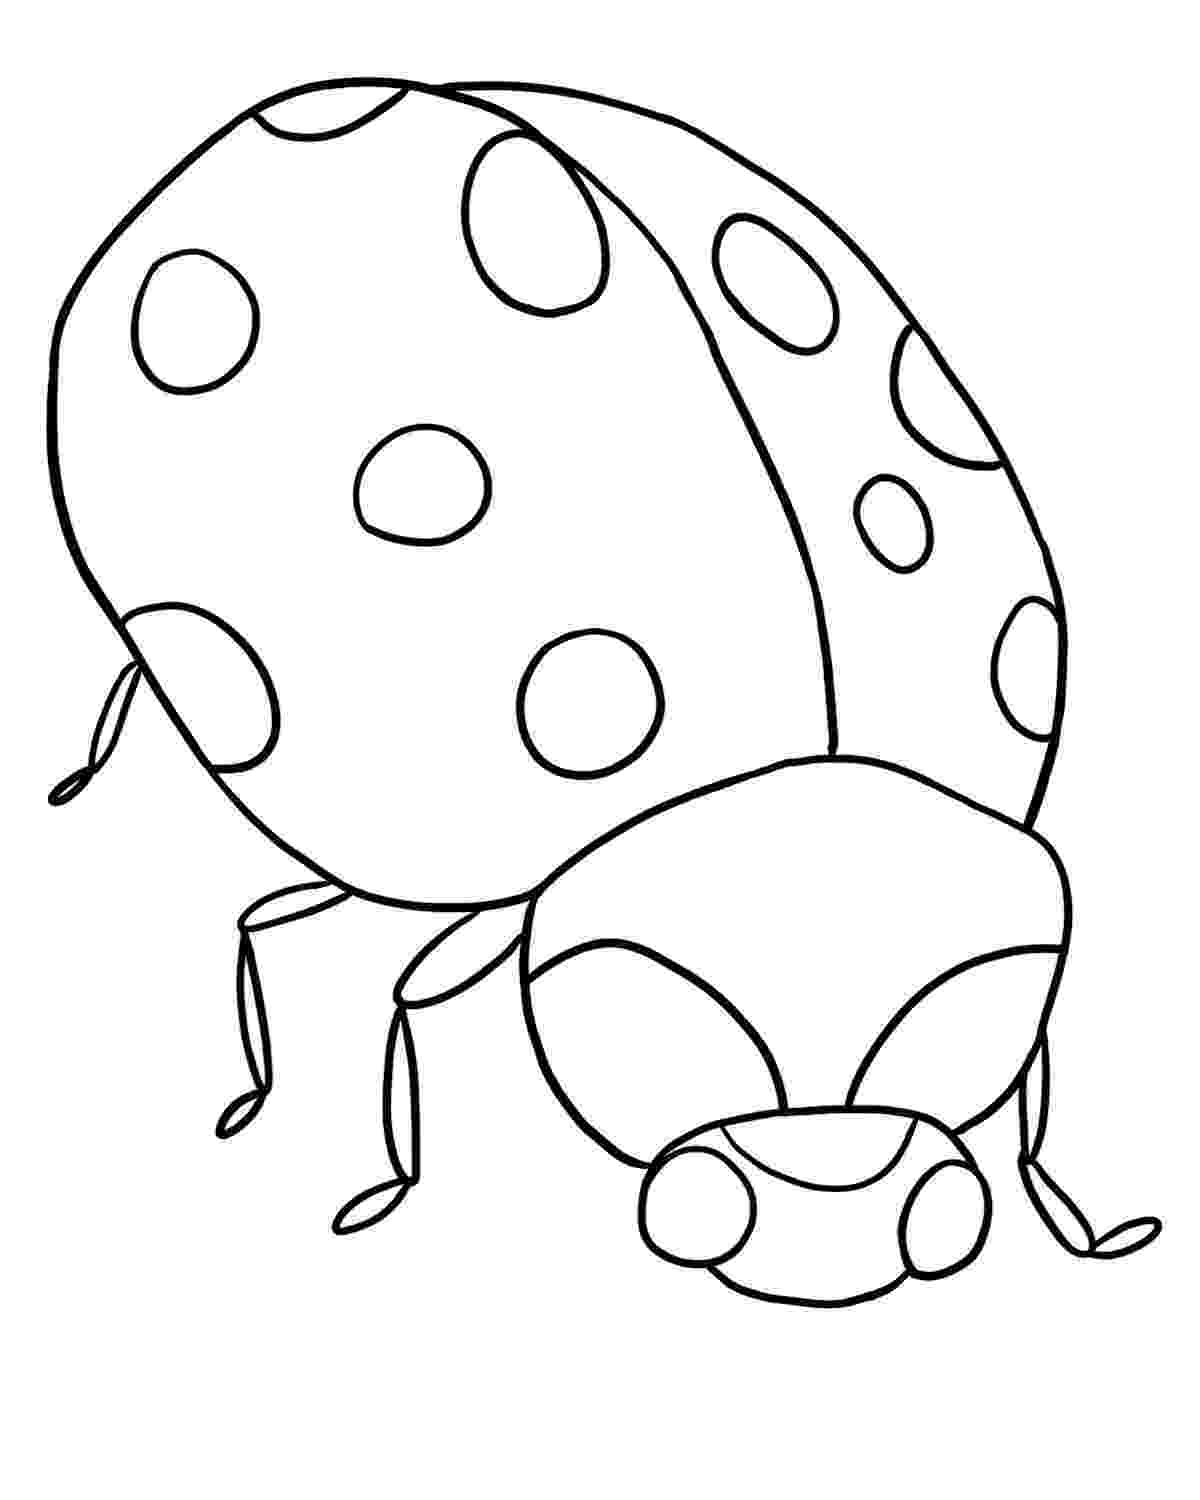 bug coloring page free printable ladybug coloring pages for kids bug coloring page 